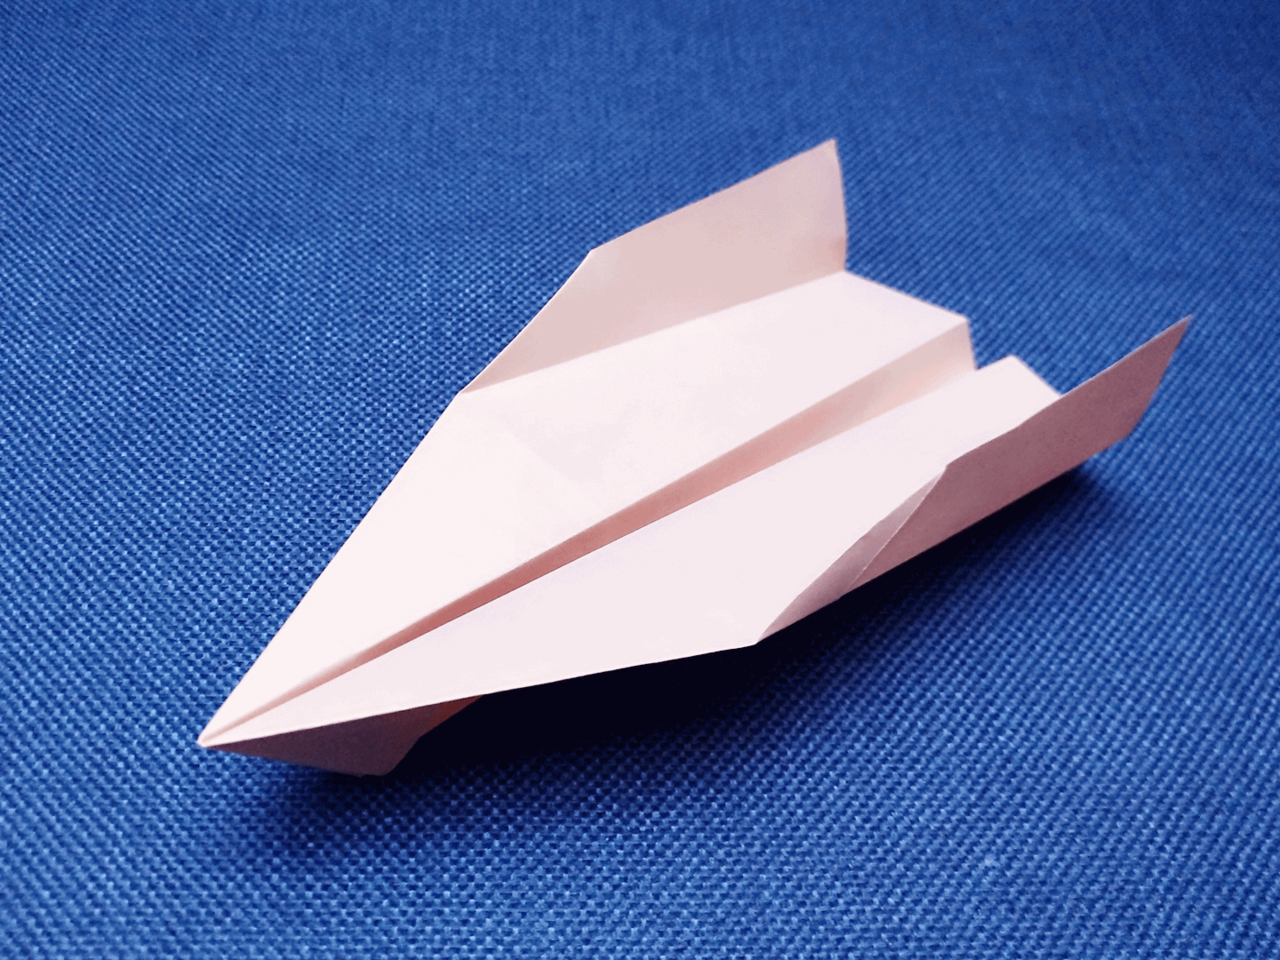 一张正方形纸折飞机图片